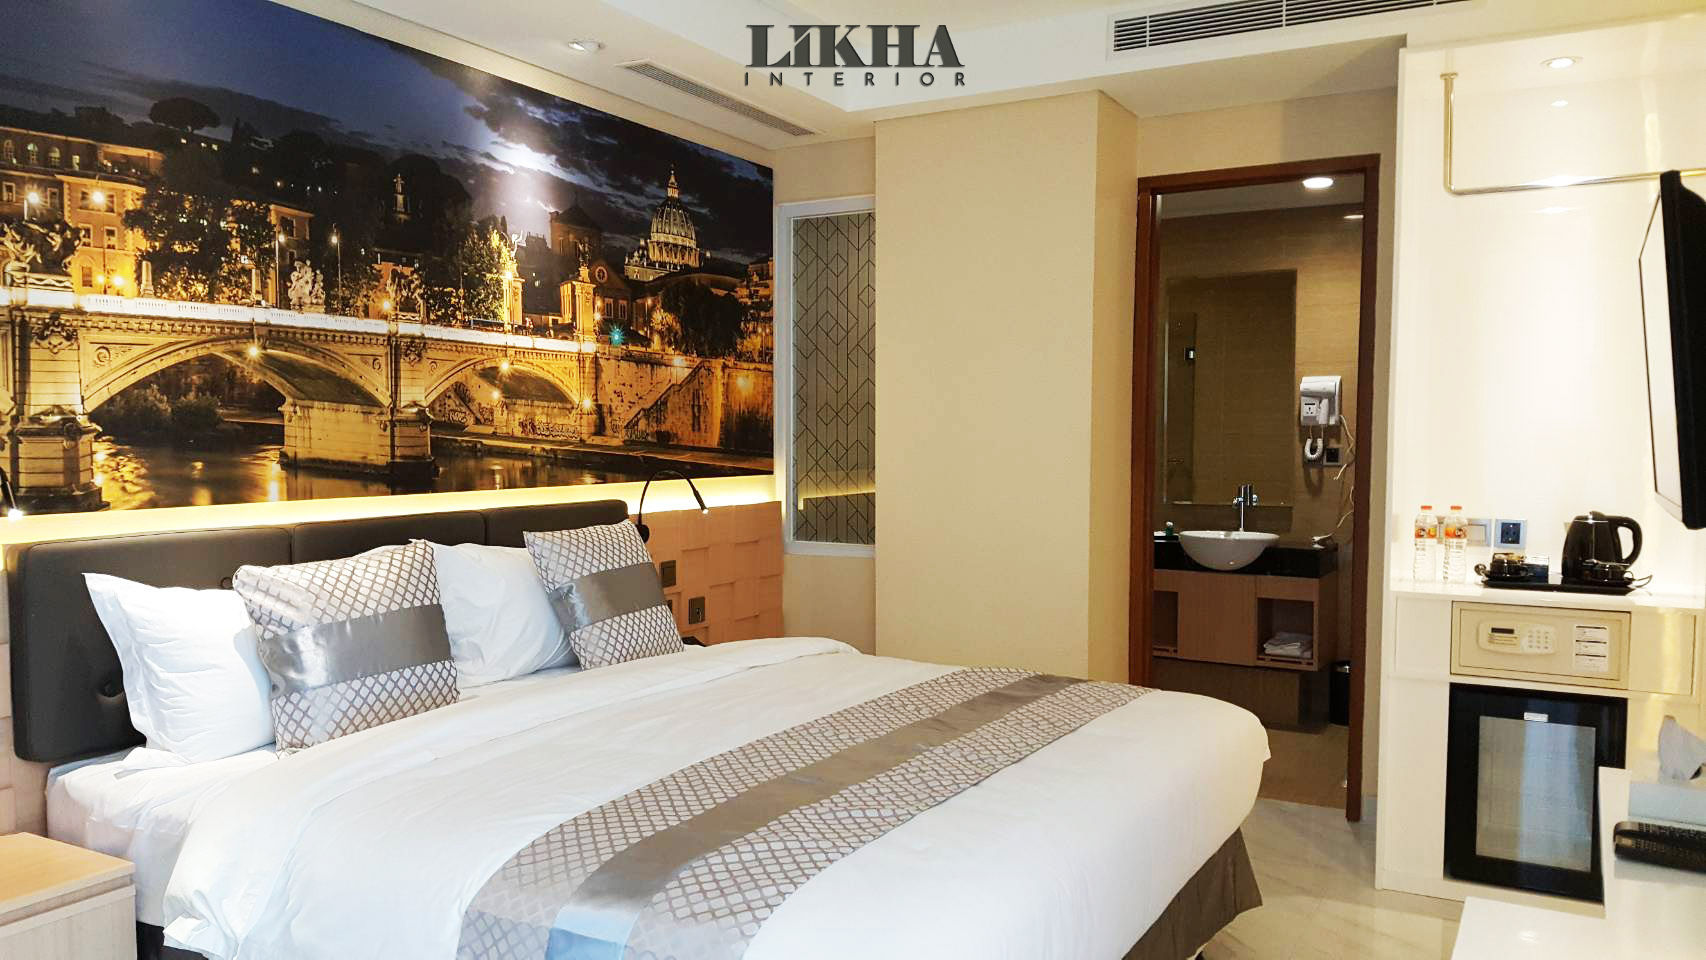 HOTEL ELEGAN DAN NYAMAN di Grand Viveana, Likha Interior Likha Interior Espaces commerciaux Contreplaqué Hôtels